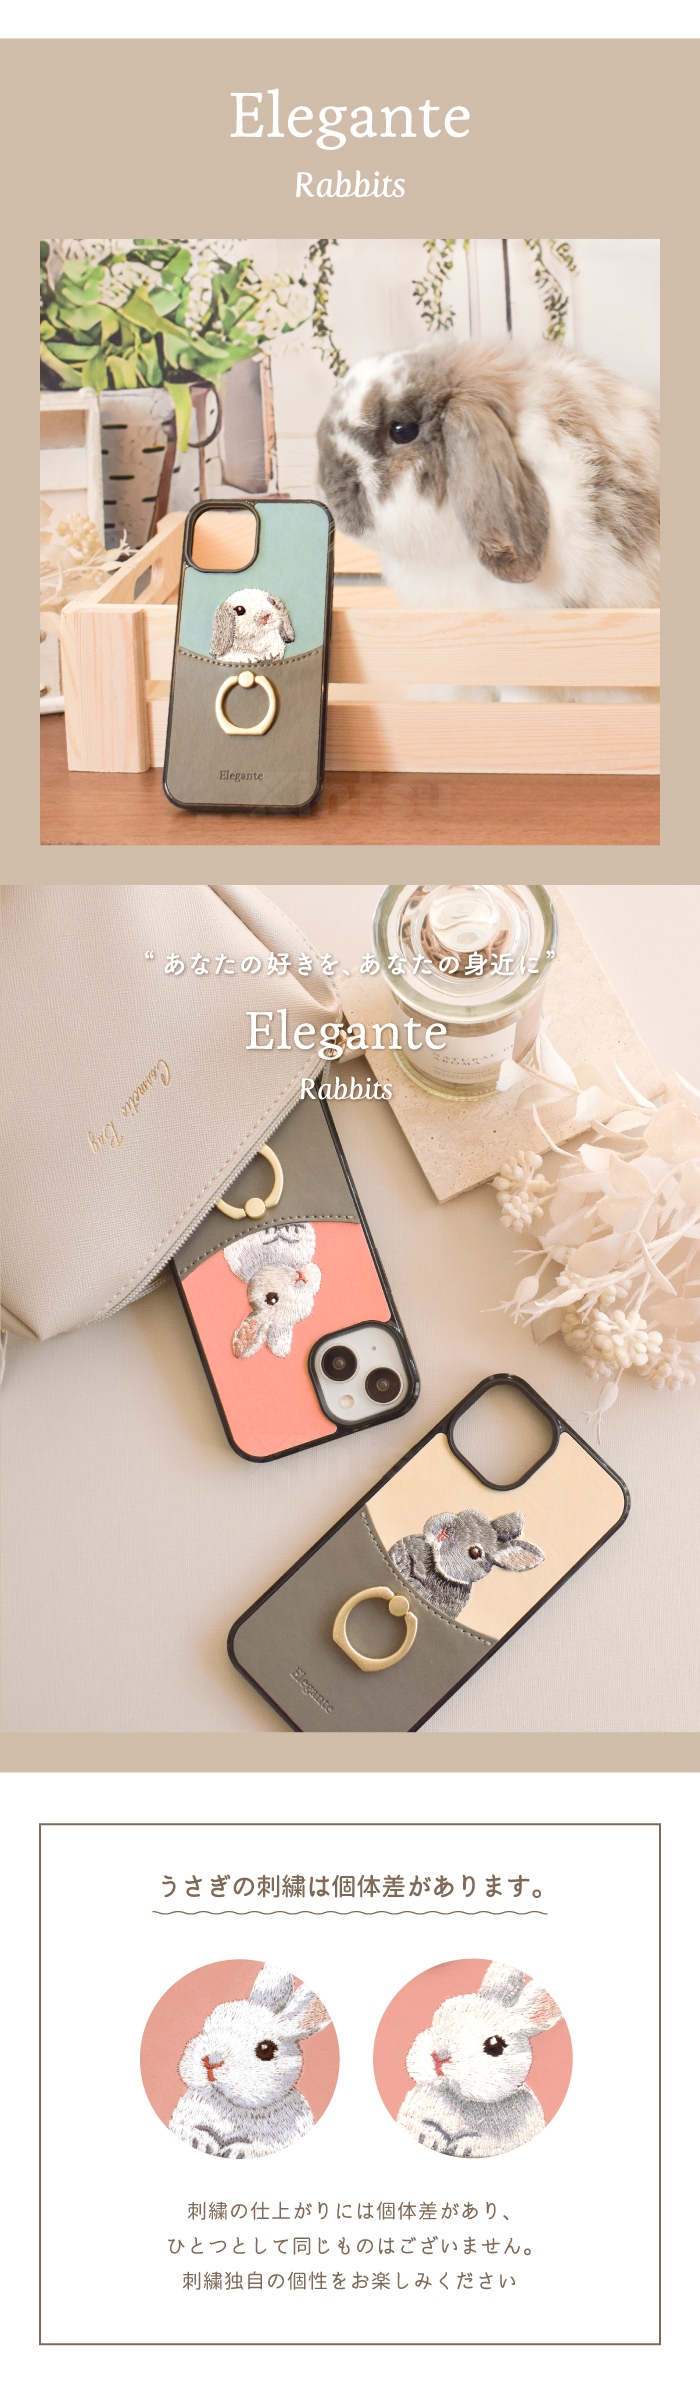 エレガンテ・うさぎ刺繍 ハードケース iPhoneシリーズ対応 【まるで本物みたいなもふもふ感】-Elegante(エレガンテ) Official  Online Store